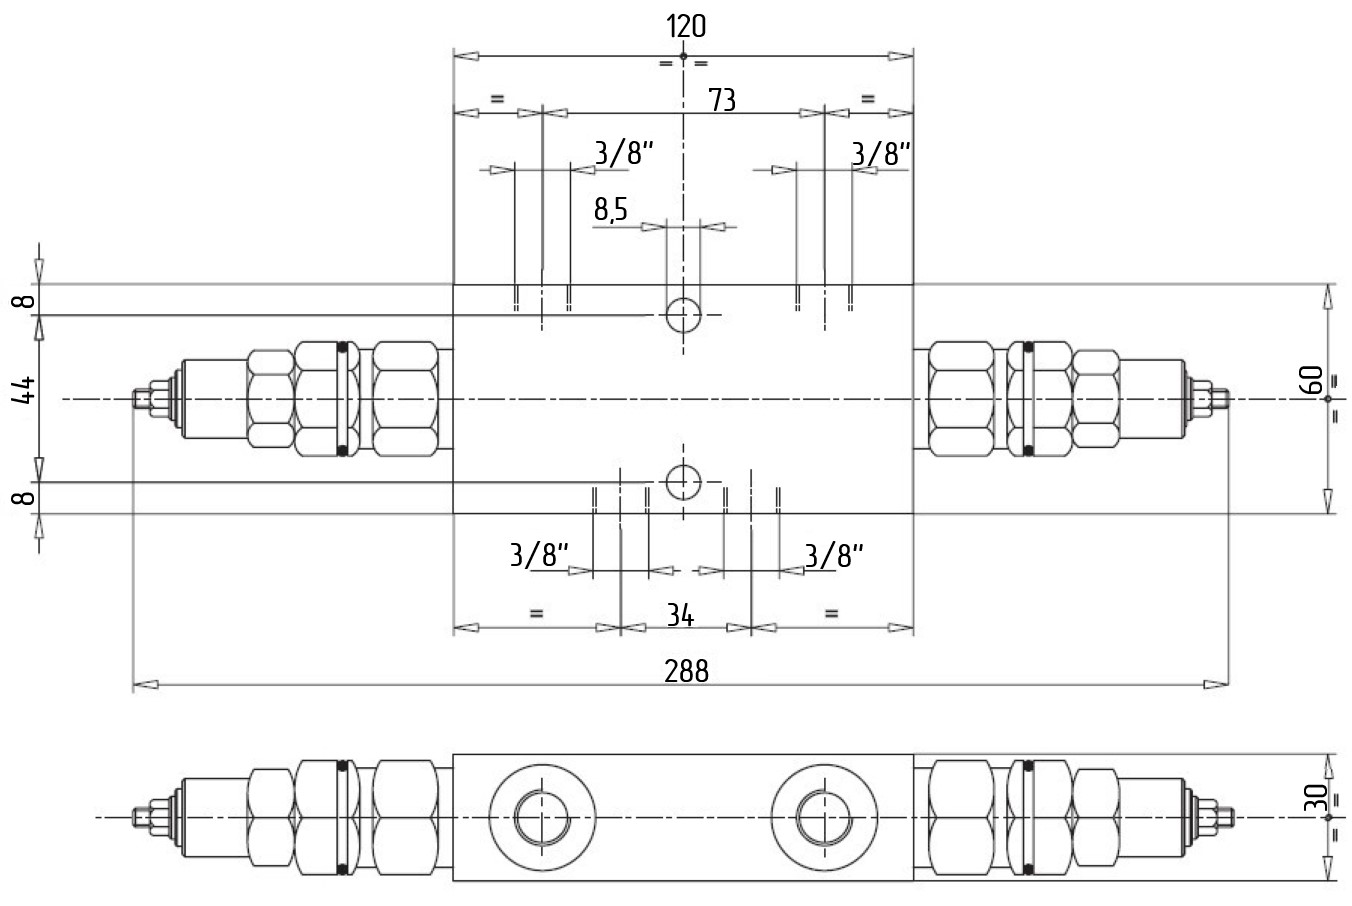 Габаритные размеры V0441 VBCD 3/8“ DE CC RP 1:8 Подпорно-тормозной клапан двусторонний